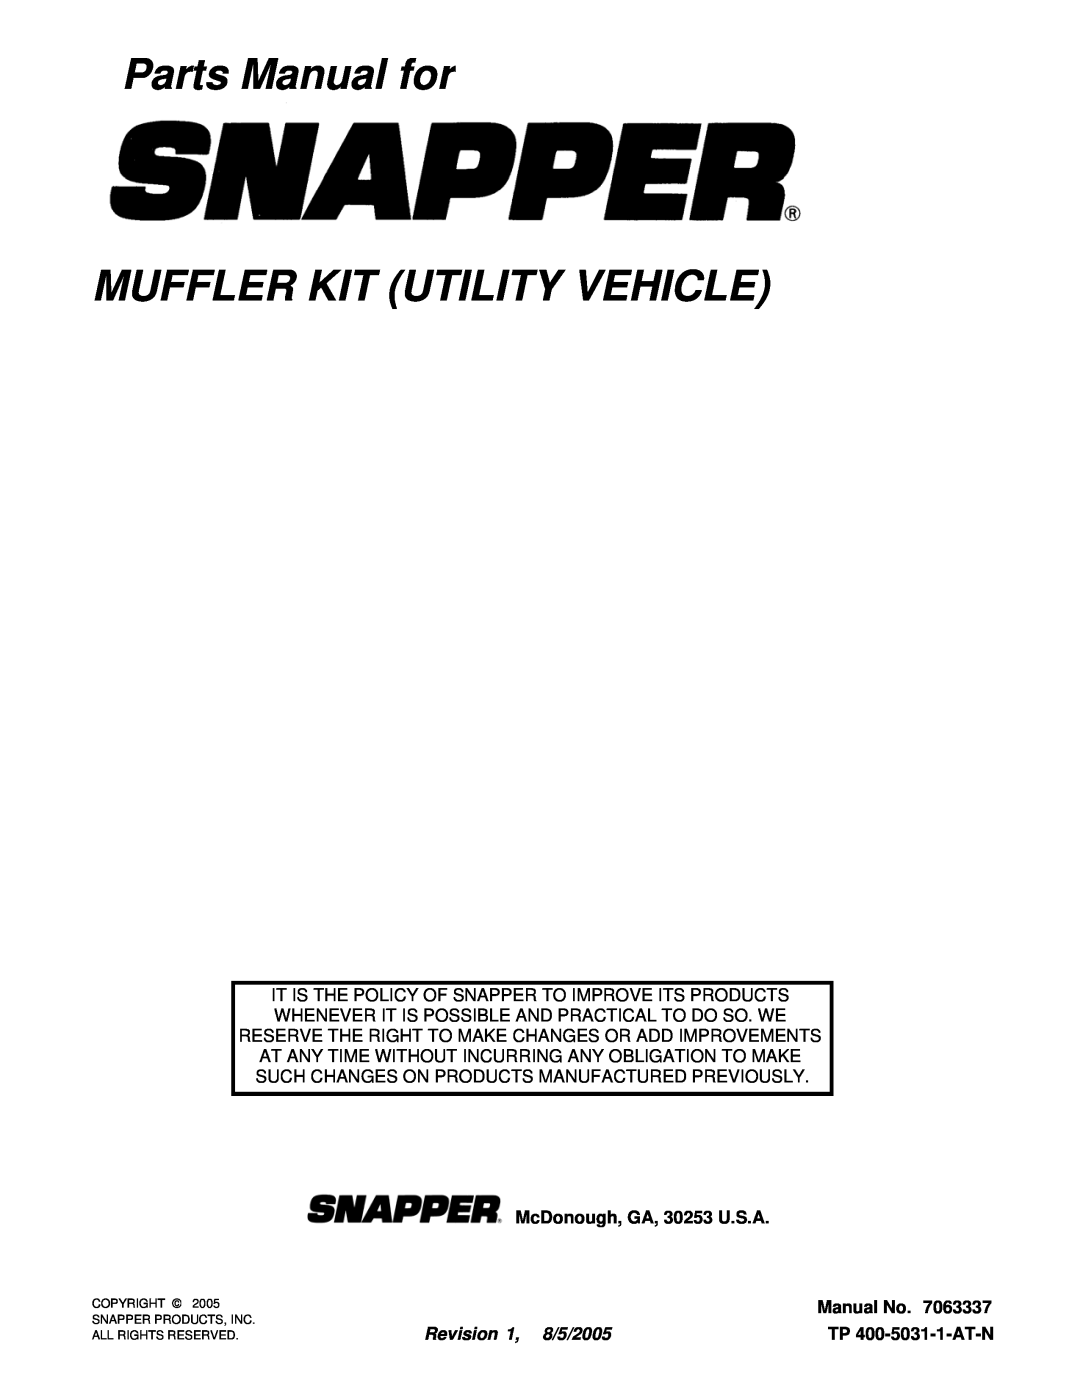 Snapper 7063337 Parts Manual for MUFFLER KIT UTILITY VEHICLE, TP 400-5031-1-AT-N, McDonough, GA, 30253 U.S.A, Manual No 